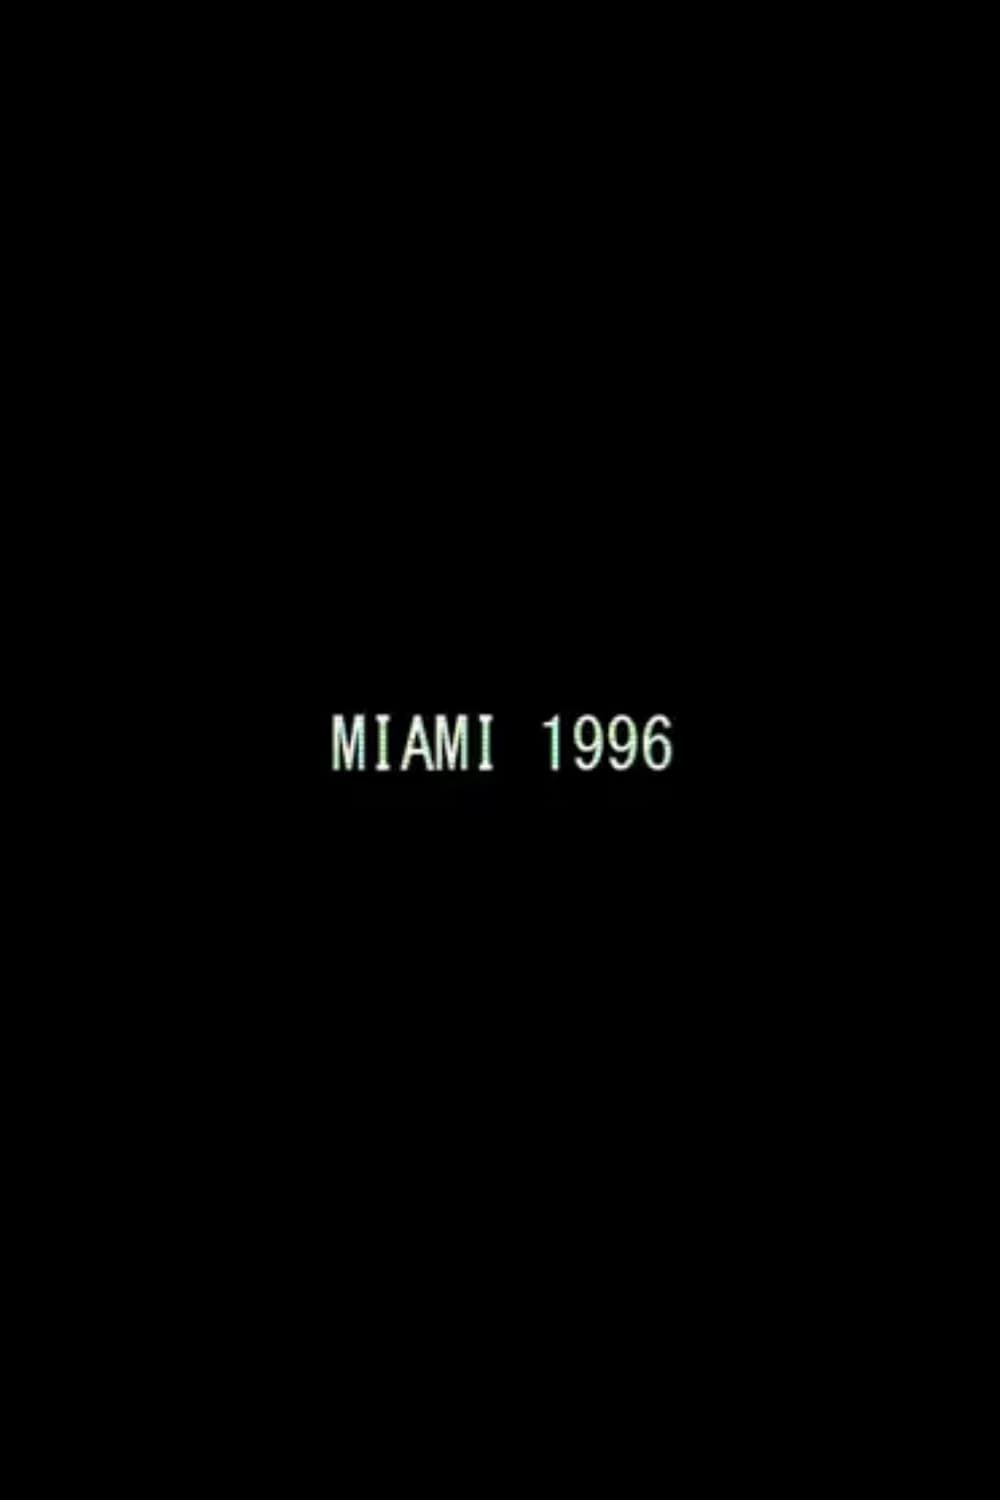 Miami 1996